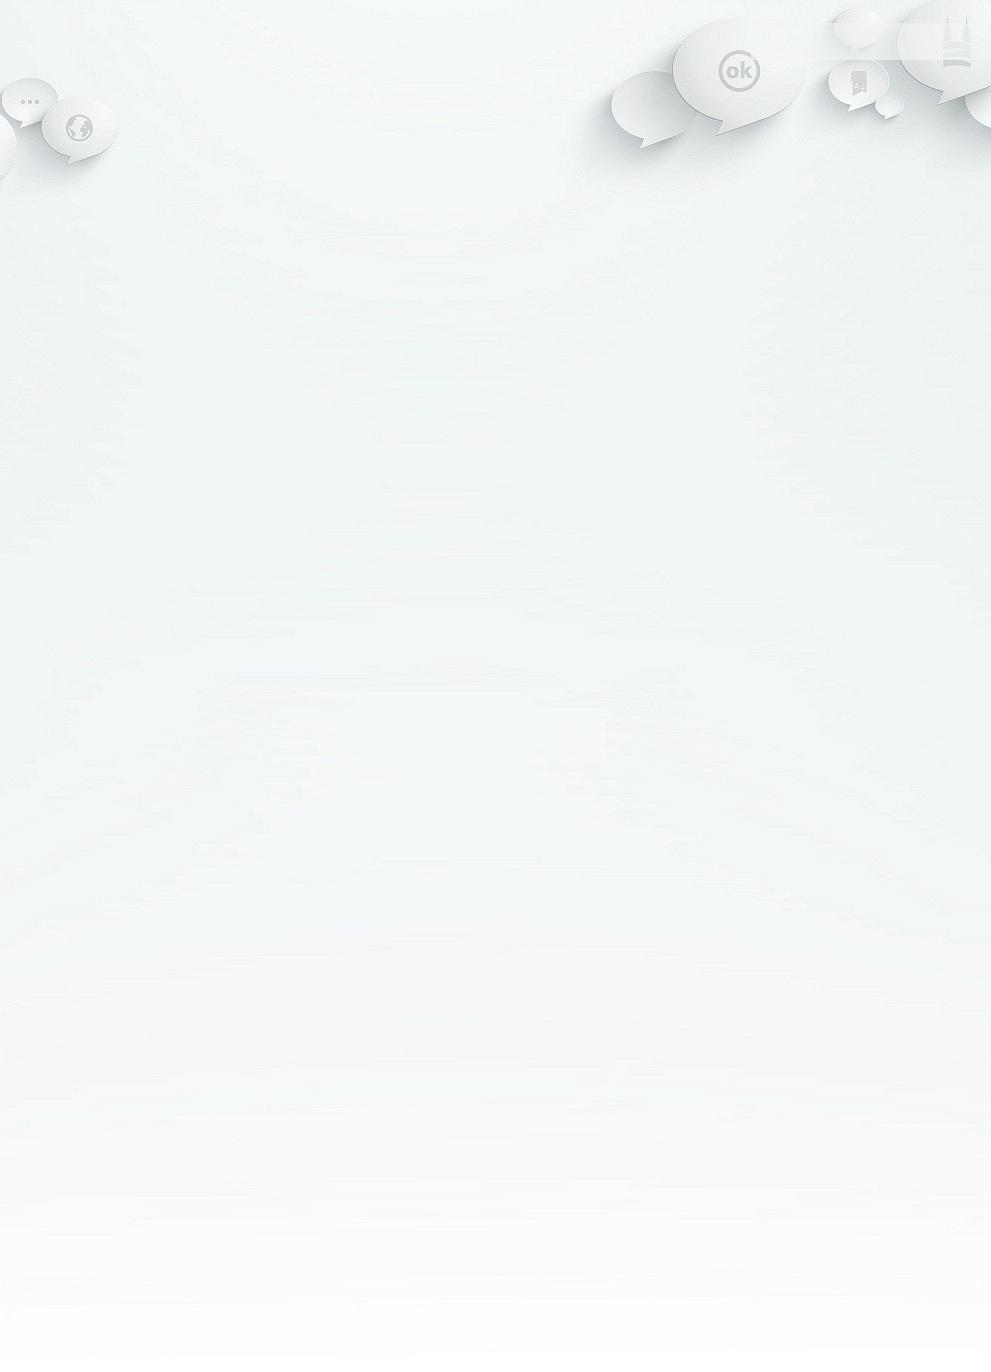 Szukaj FLESZ Ślubowanie klas pierwszych w Jedynce 27 Paź 2014 12:13:08 Zaloguj Zarejestruj Start Wiadomości Miasto i Powiat Aktualności Sport Kronika policyjna Przegląd prasy Samorząd i NGO's Video